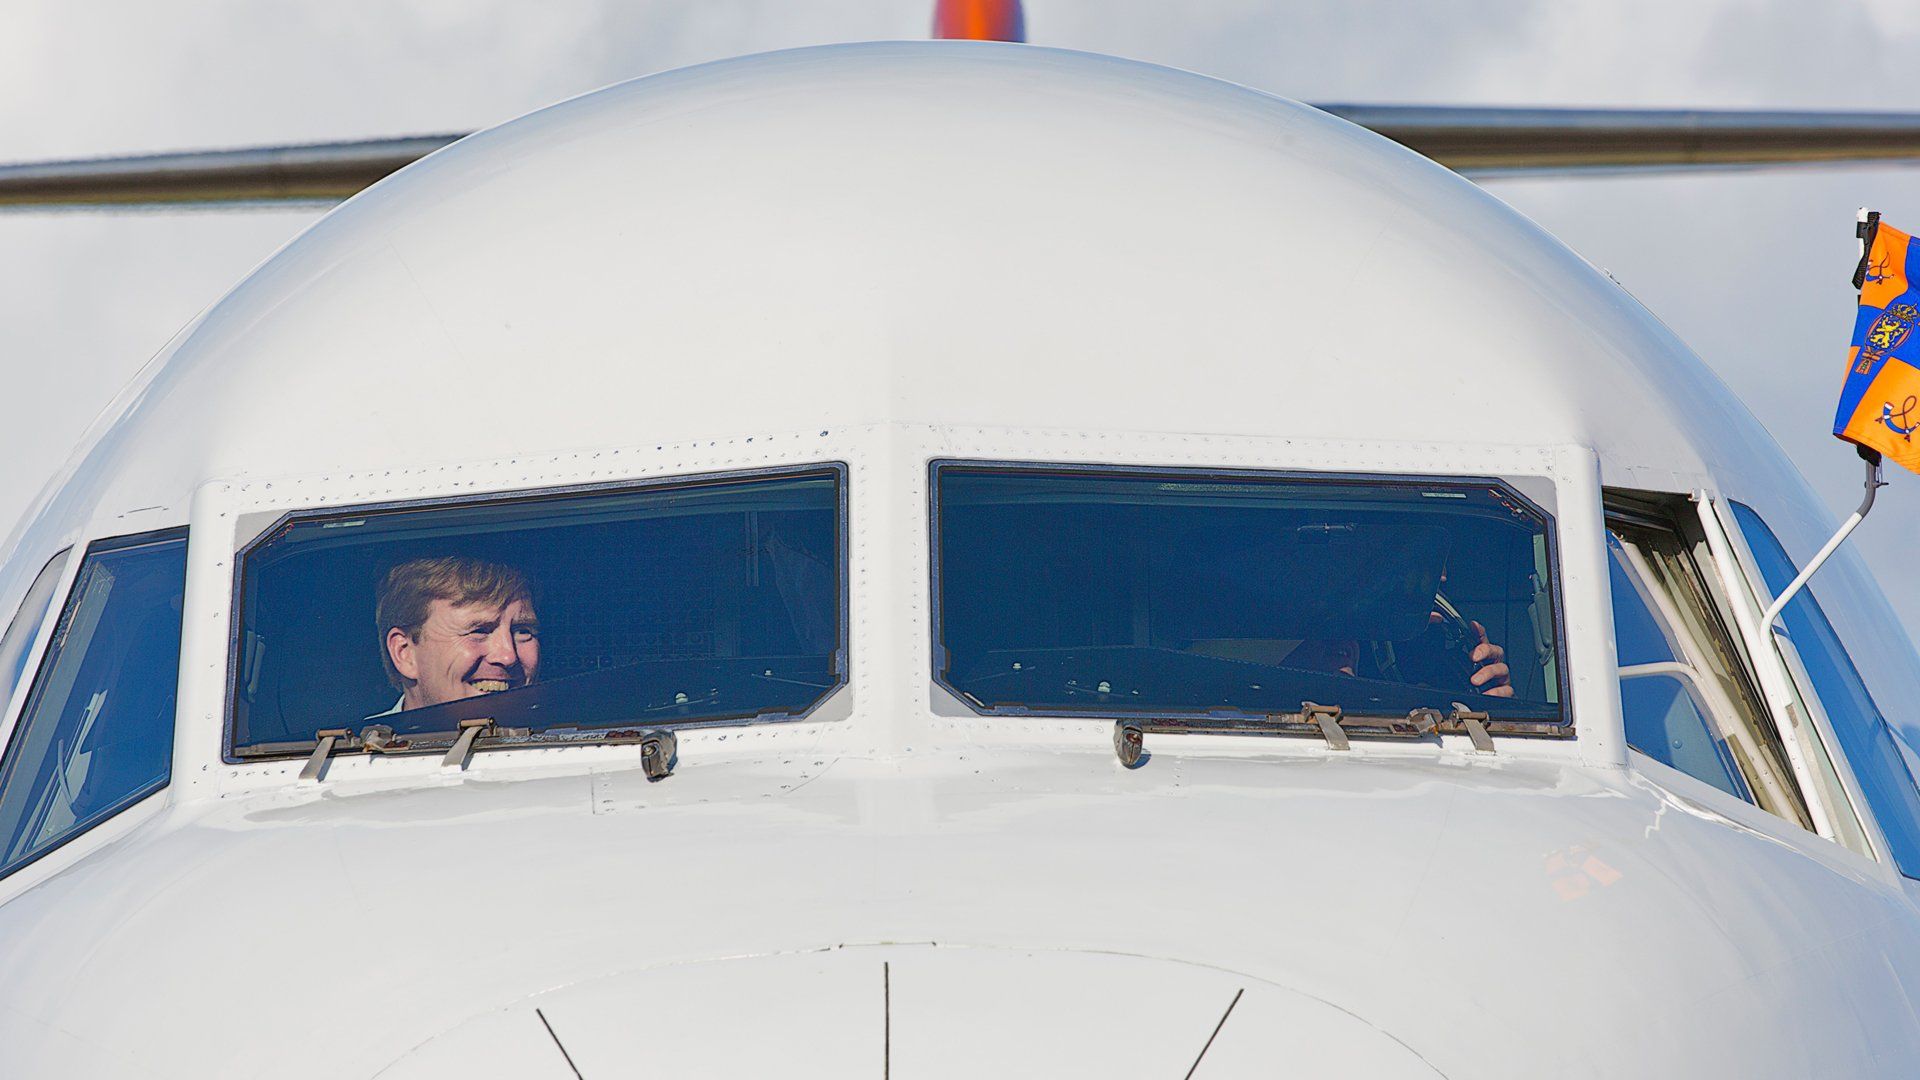 Koning_Willem-Alexander_cockpit_vliegtuig.jpg